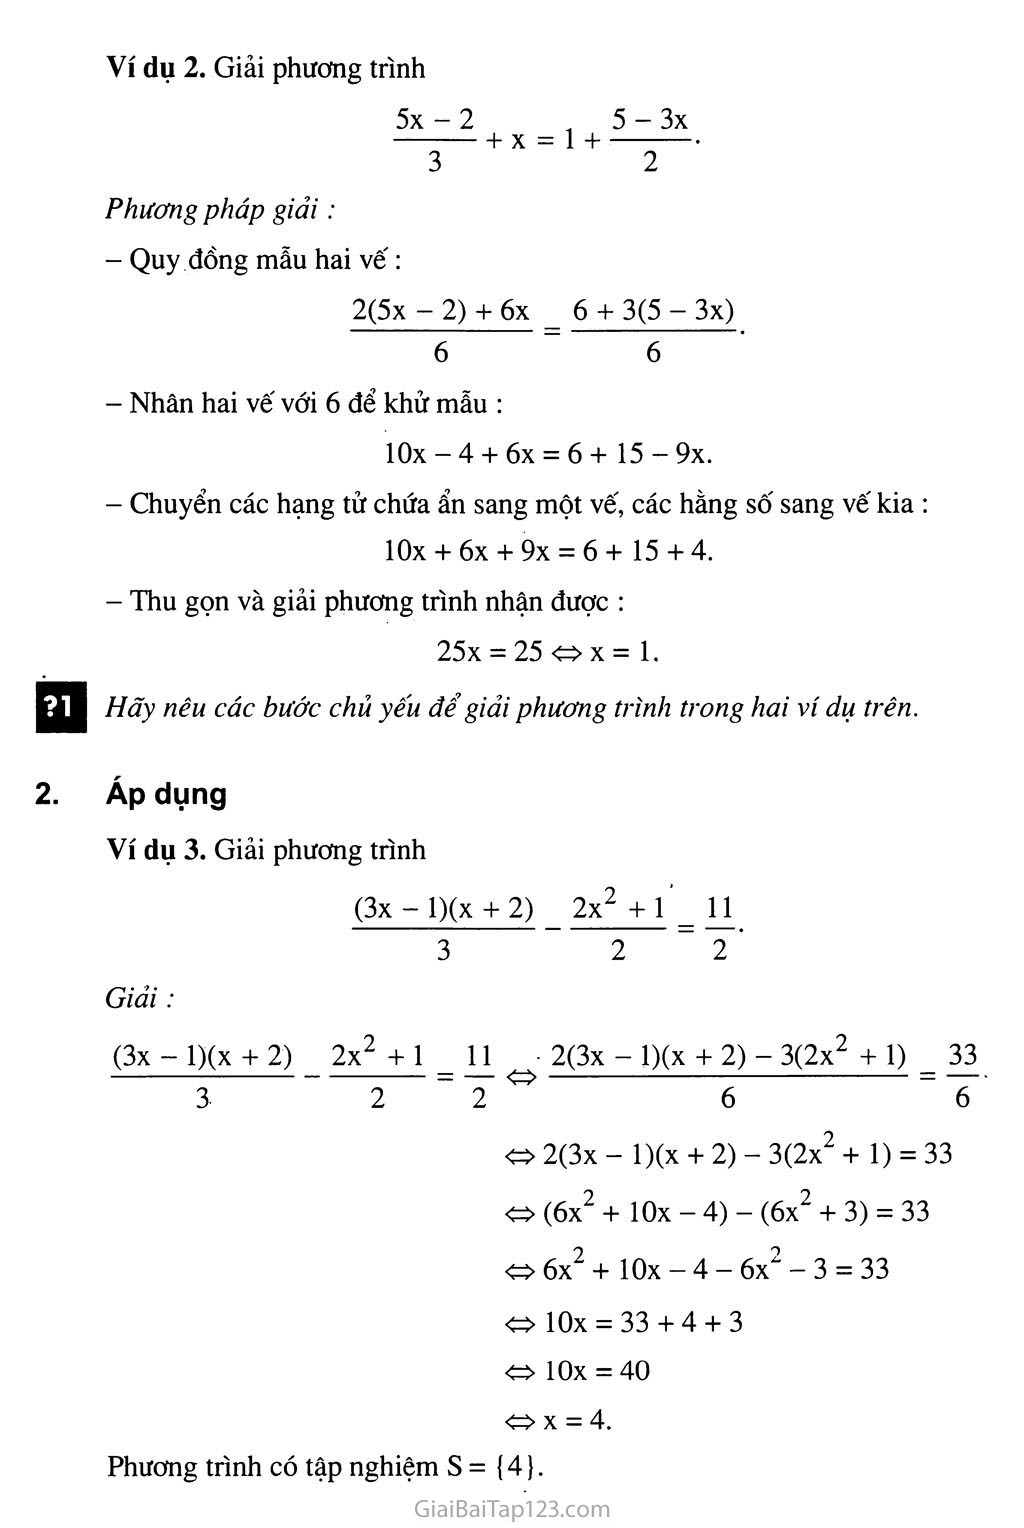 Bài 3. Phương trình đưa được về dạng ax + b = 0 trang 2